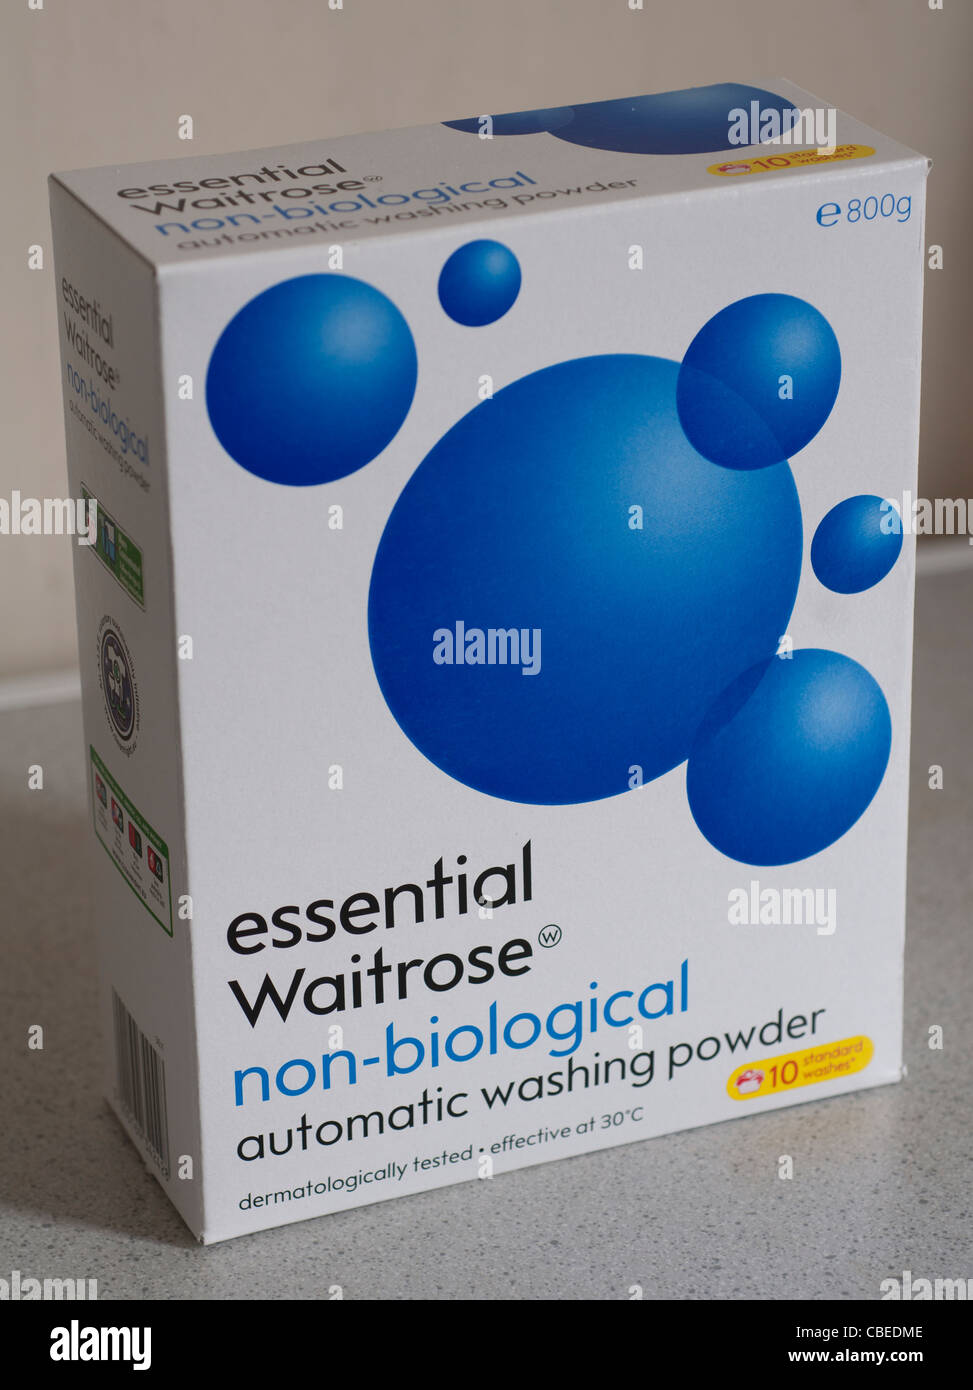 Waitrose supermarket washing powder Stock Photo - Alamy